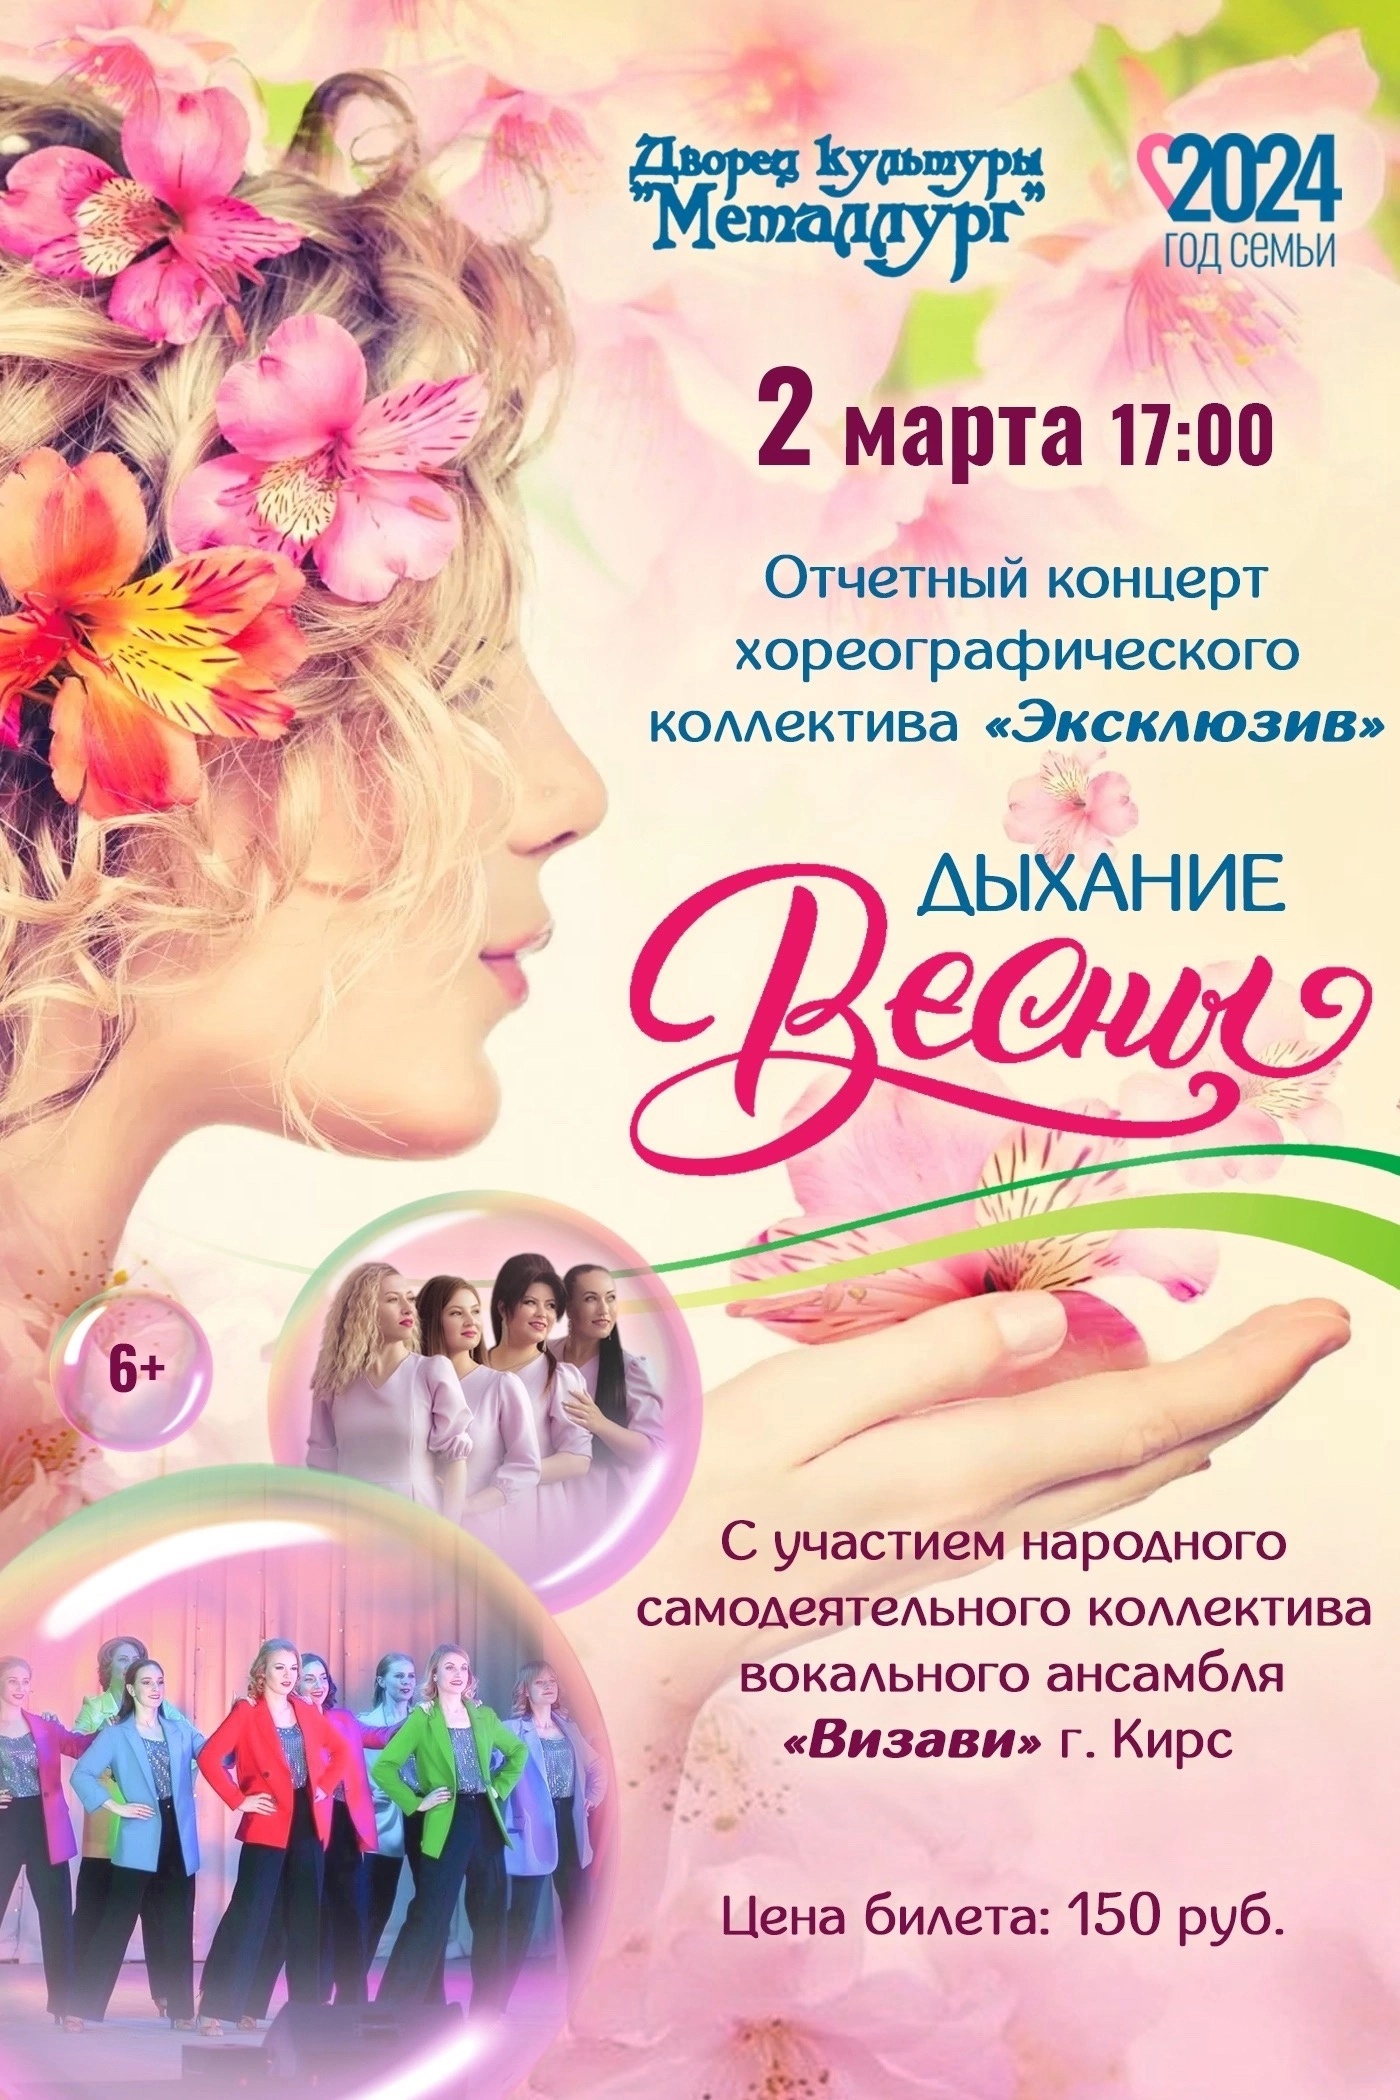 Отчетный концерт хореографического коллектива «Эксклюзив» - «Дыхание весны» (6+).